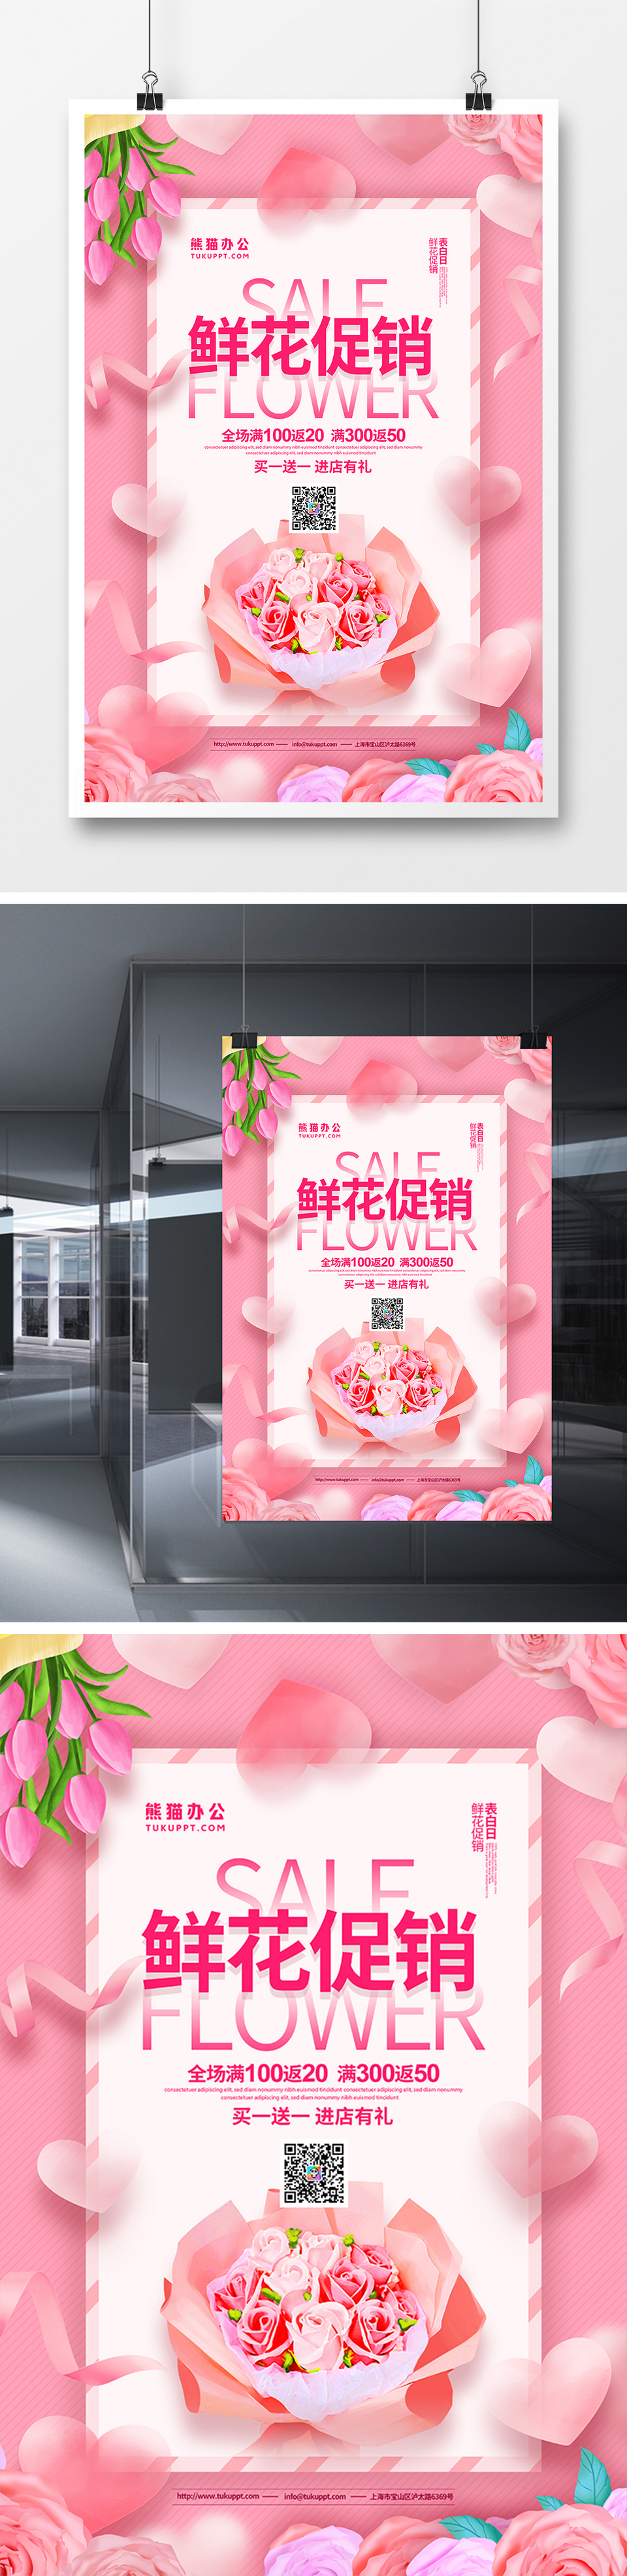 清新简约鲜花促销宣传海报